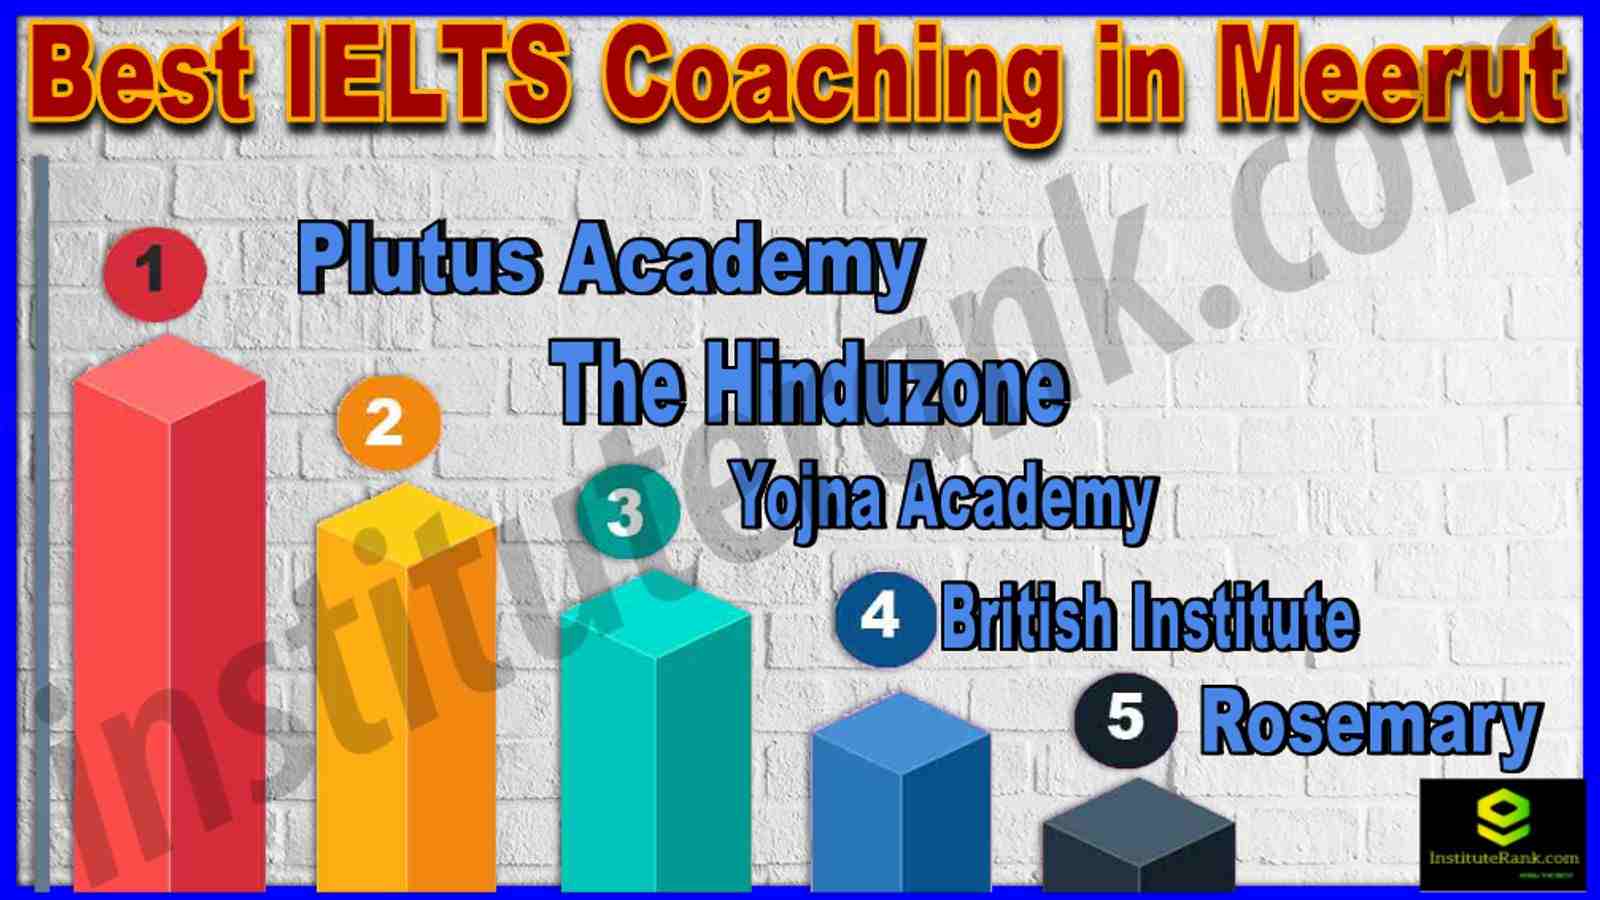 Best IELTS Coaching in Meerut